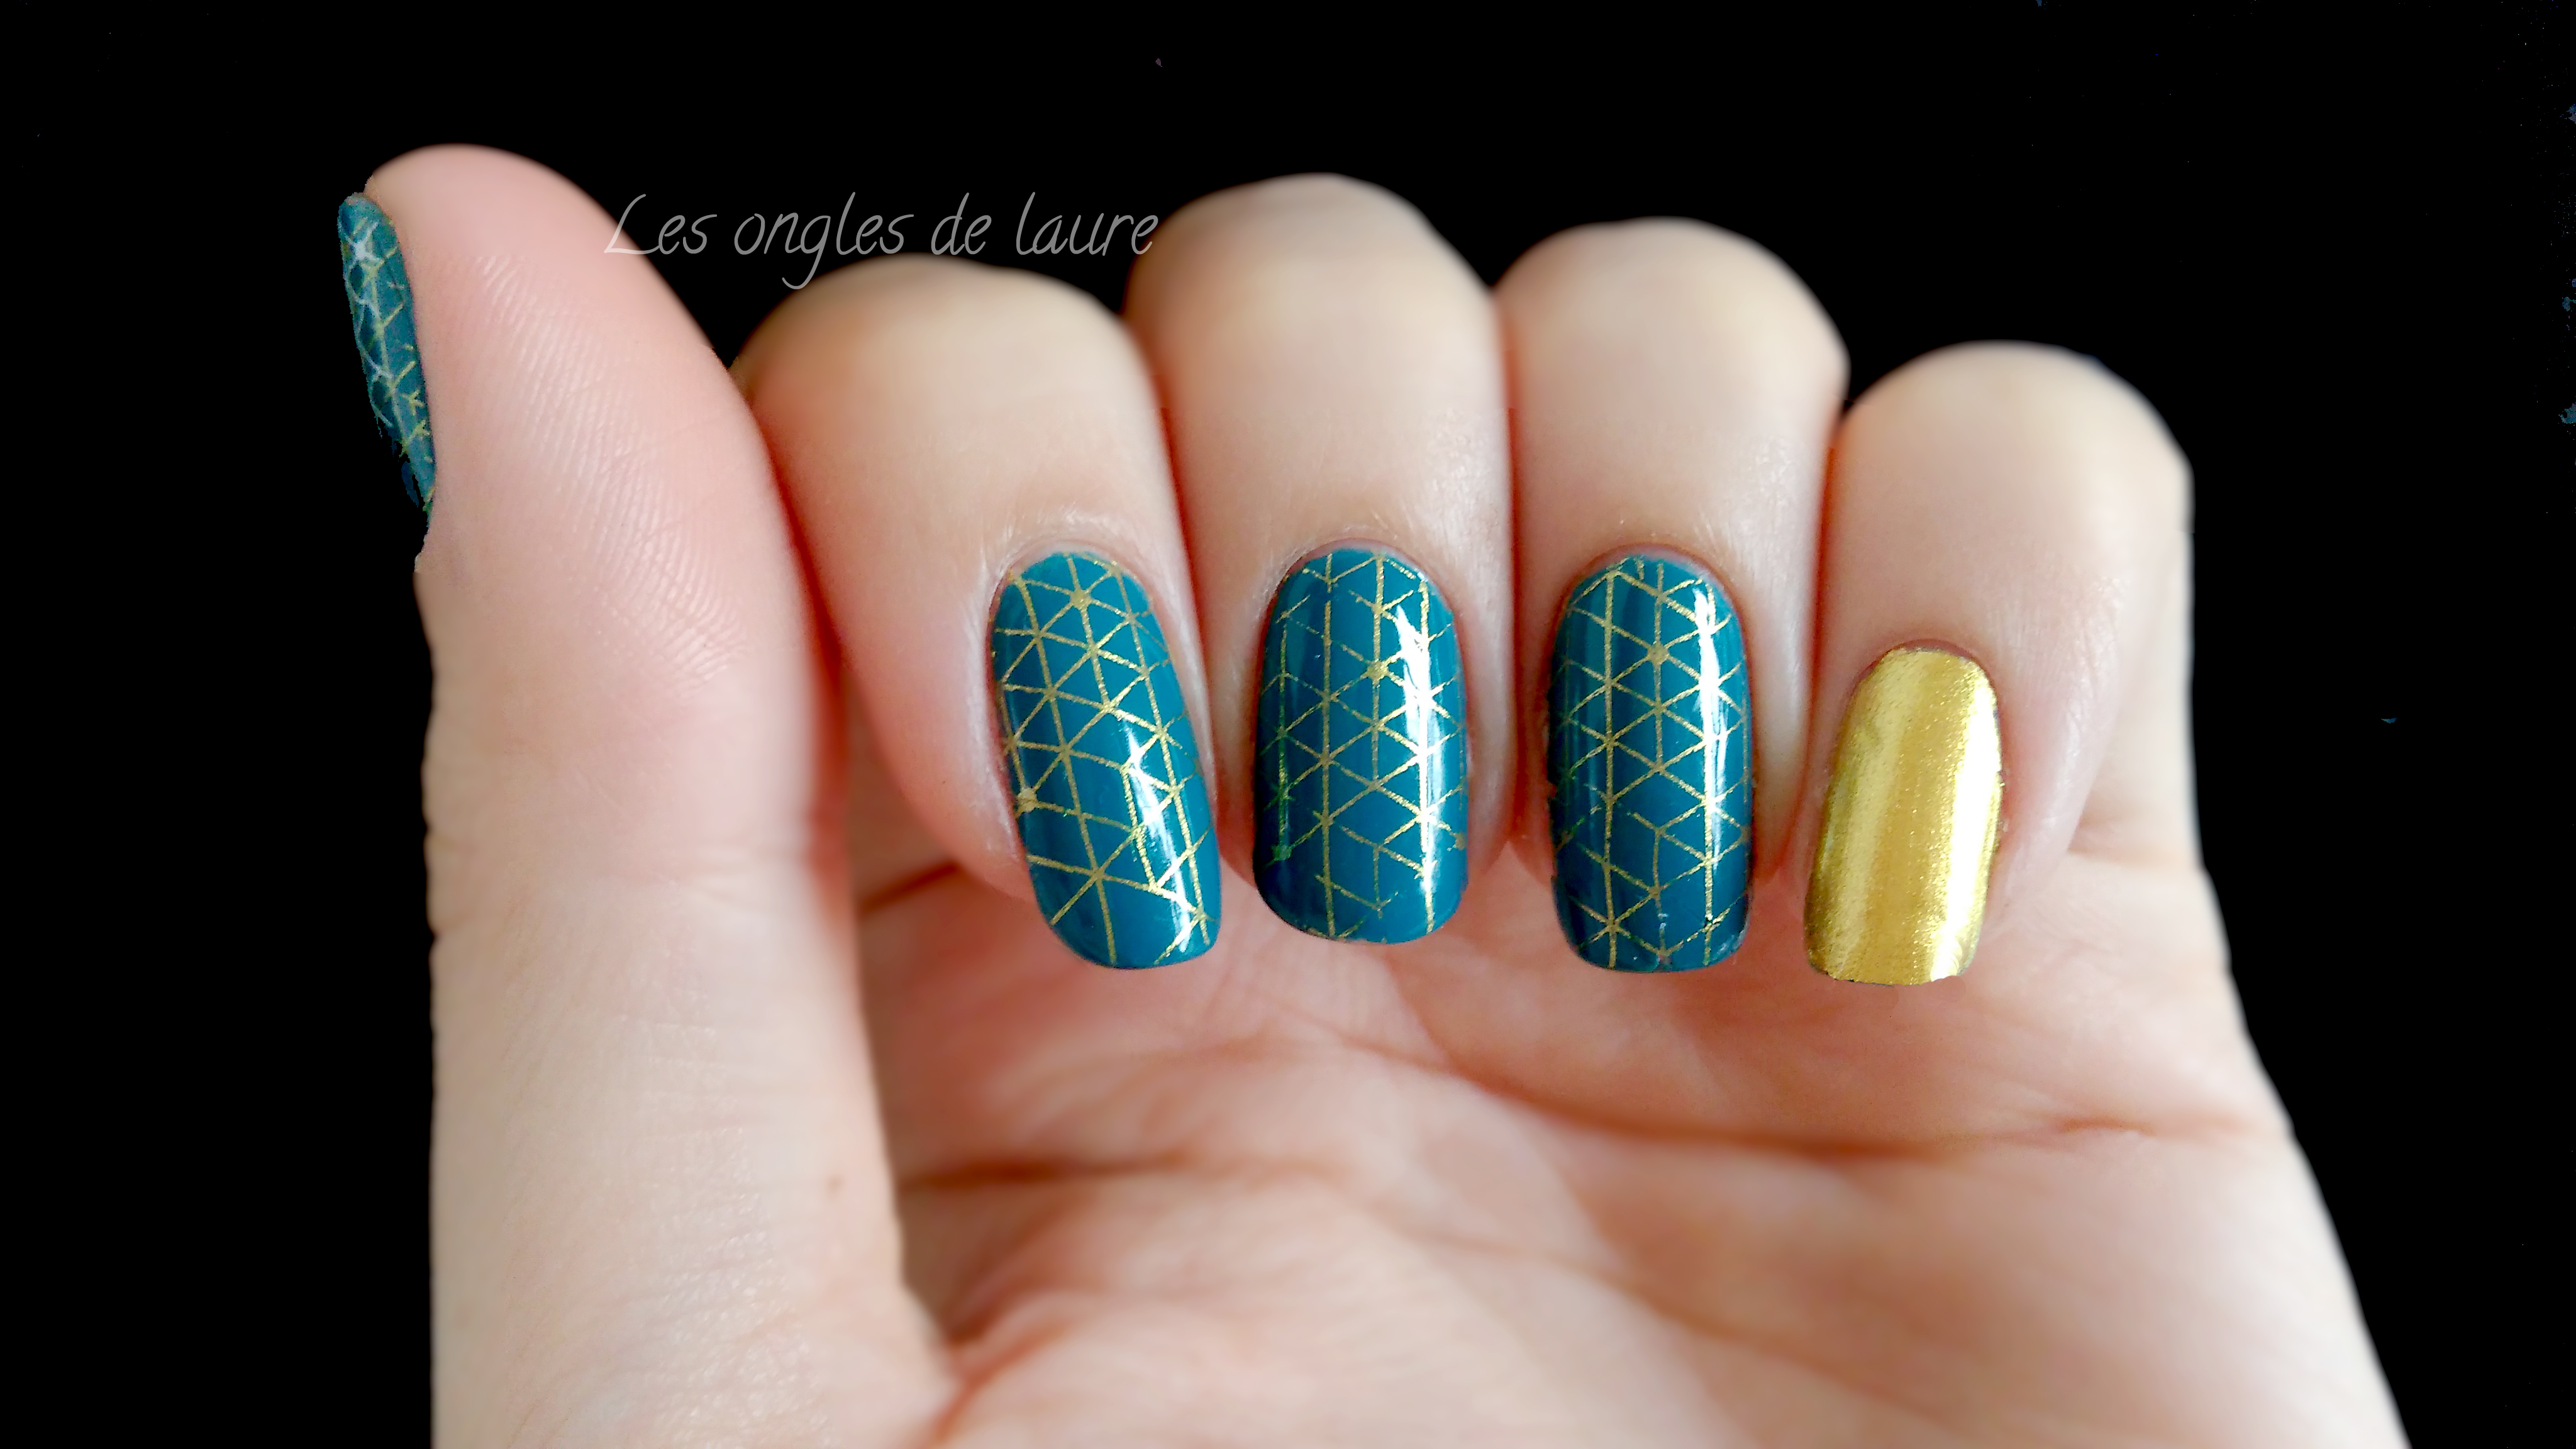 L'automne arrive ! (Nouvelle manucure) - Les ongles de Laure - Blog Nail Art